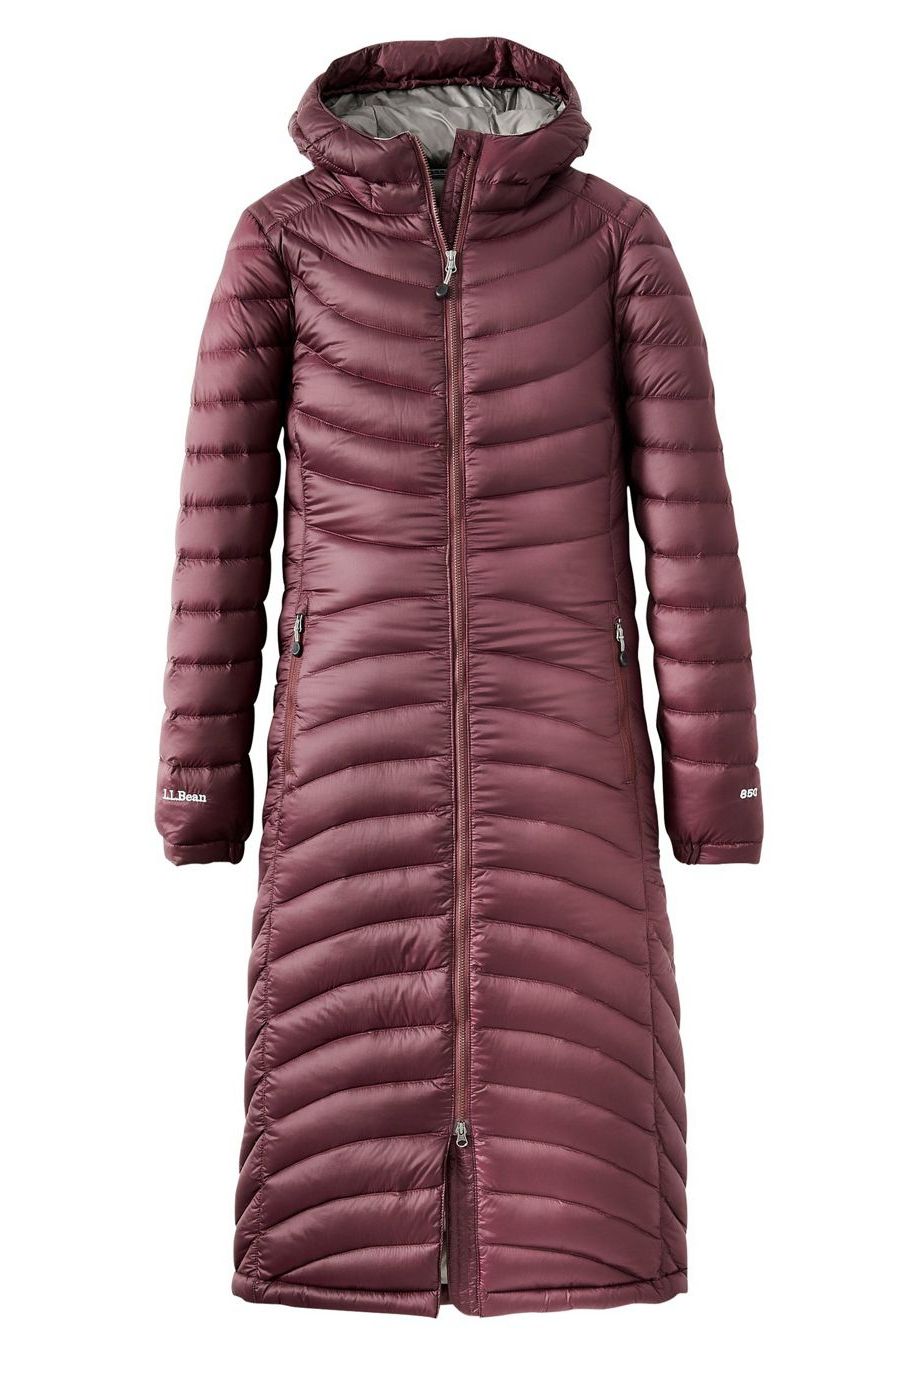 2023 Women Winter Jacket With Fur Hood Long Down Warm Parka